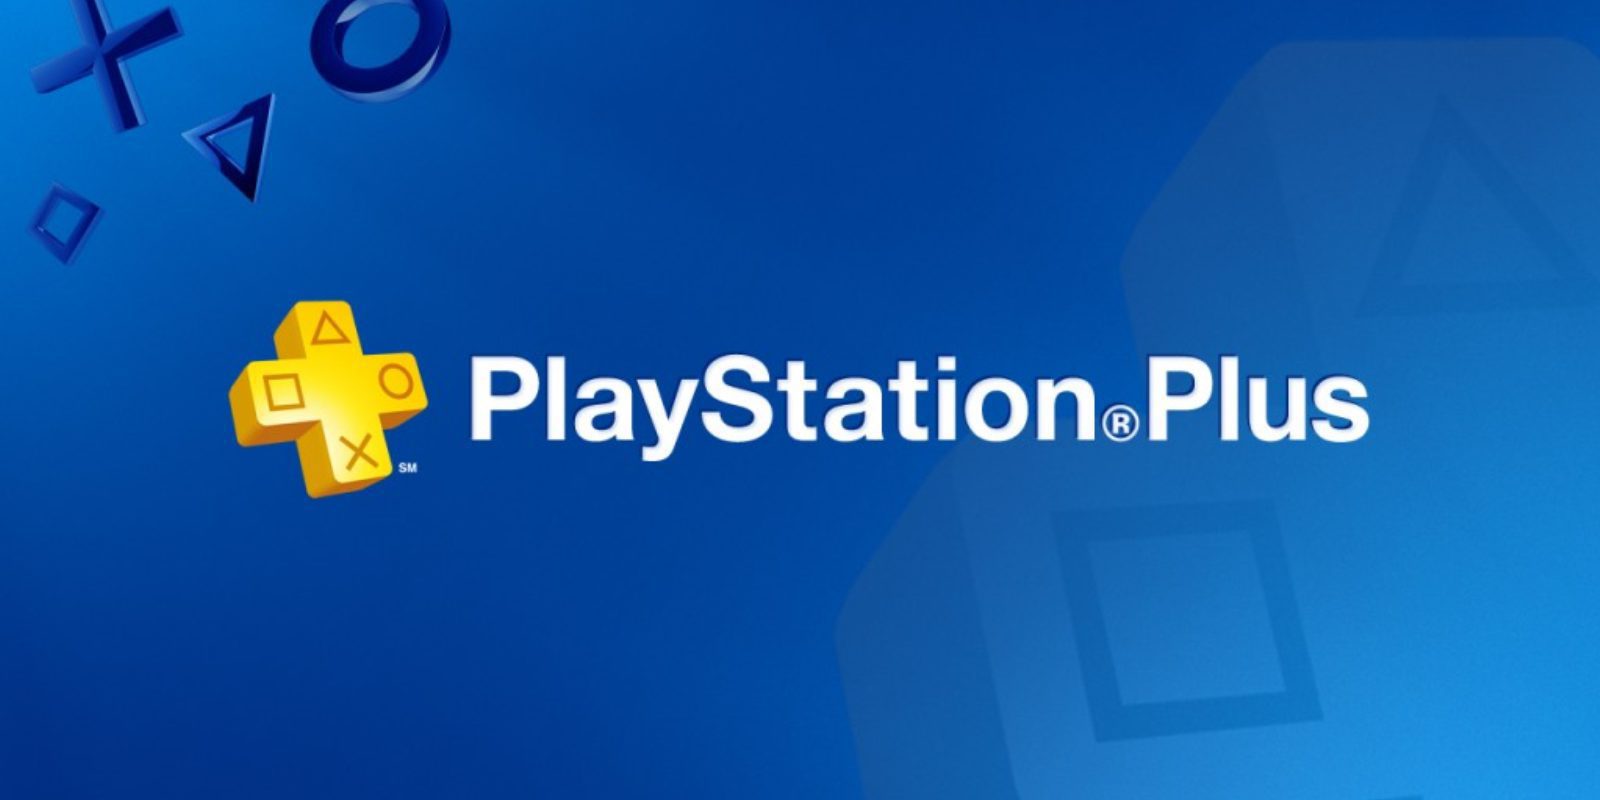 Desvelados los juegos de PlayStation Plus del mes de junio